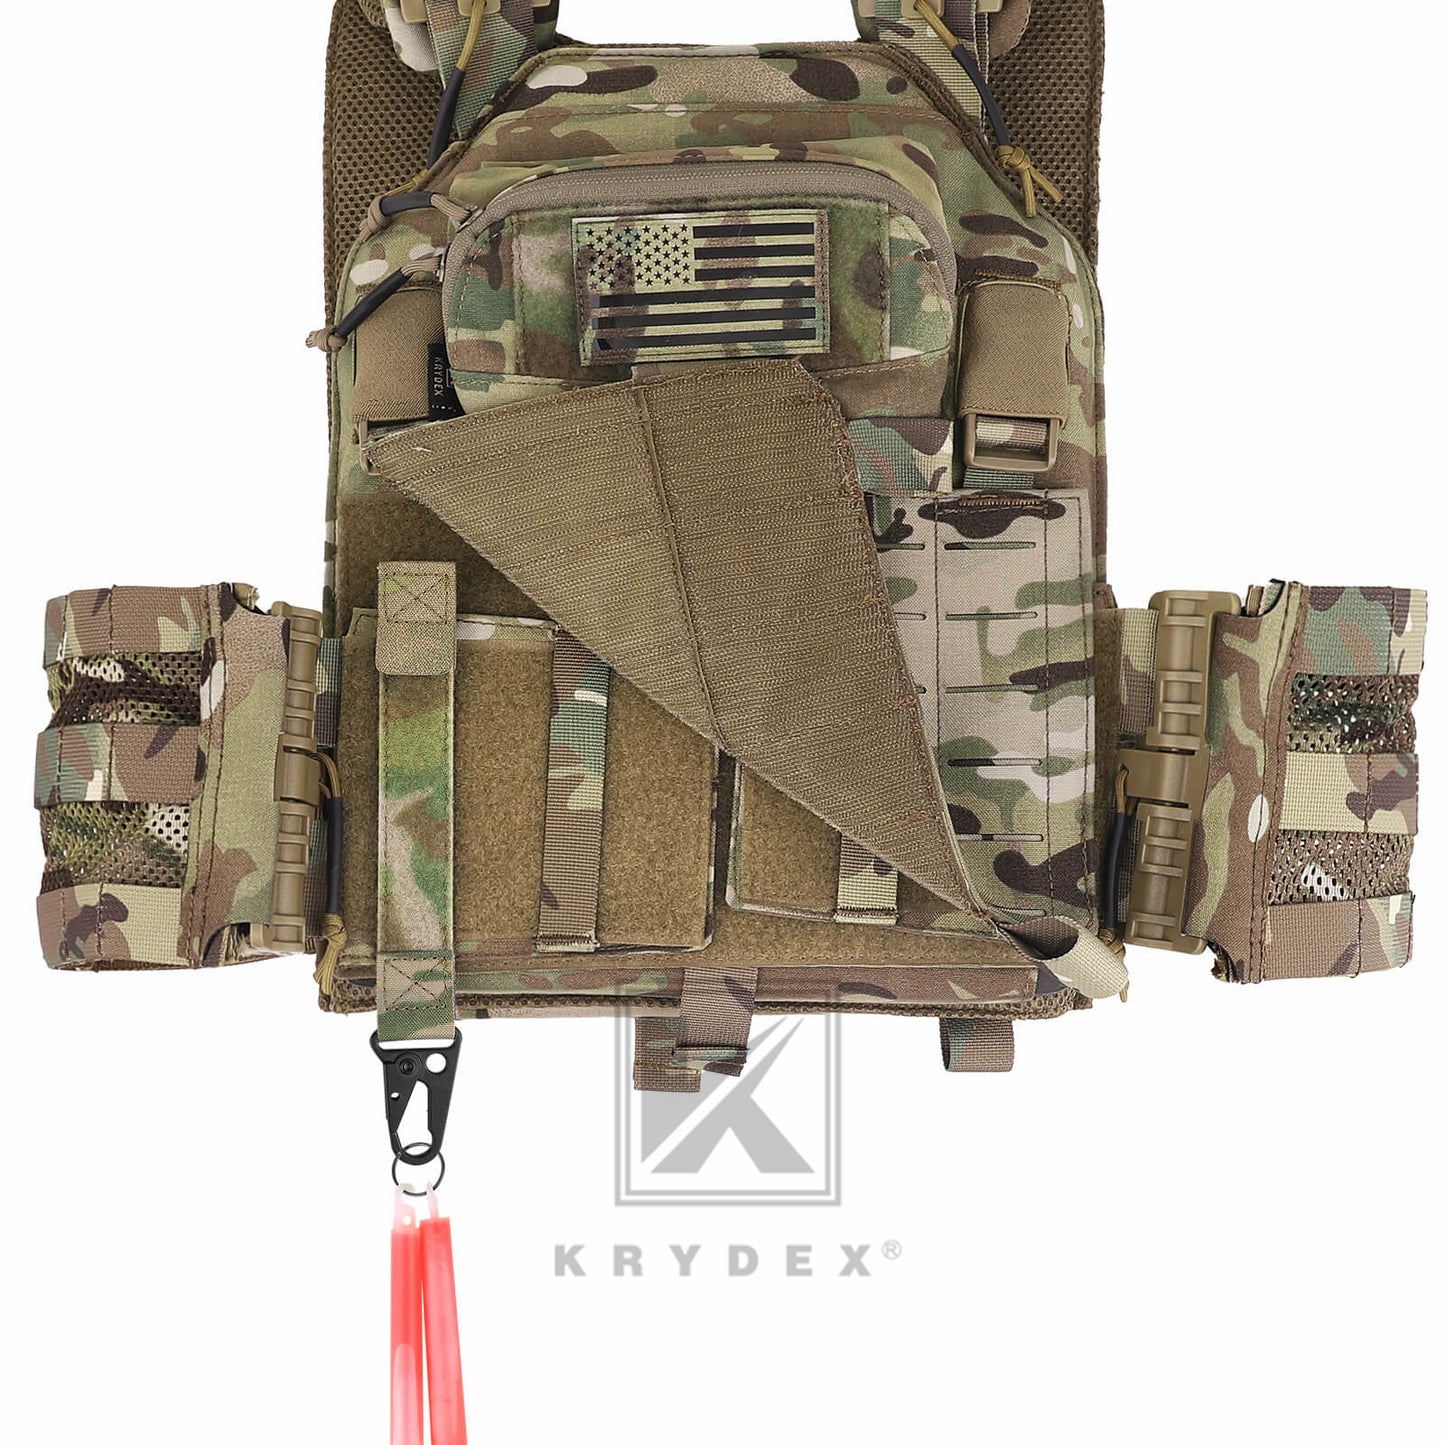 Krydex Tactical Belt Keeper Utility Hook Key Holder Keychain Gloves Carabiner Chemstick Clip MOLLE / Hook & Loop Battle Belt & Plate Carrier